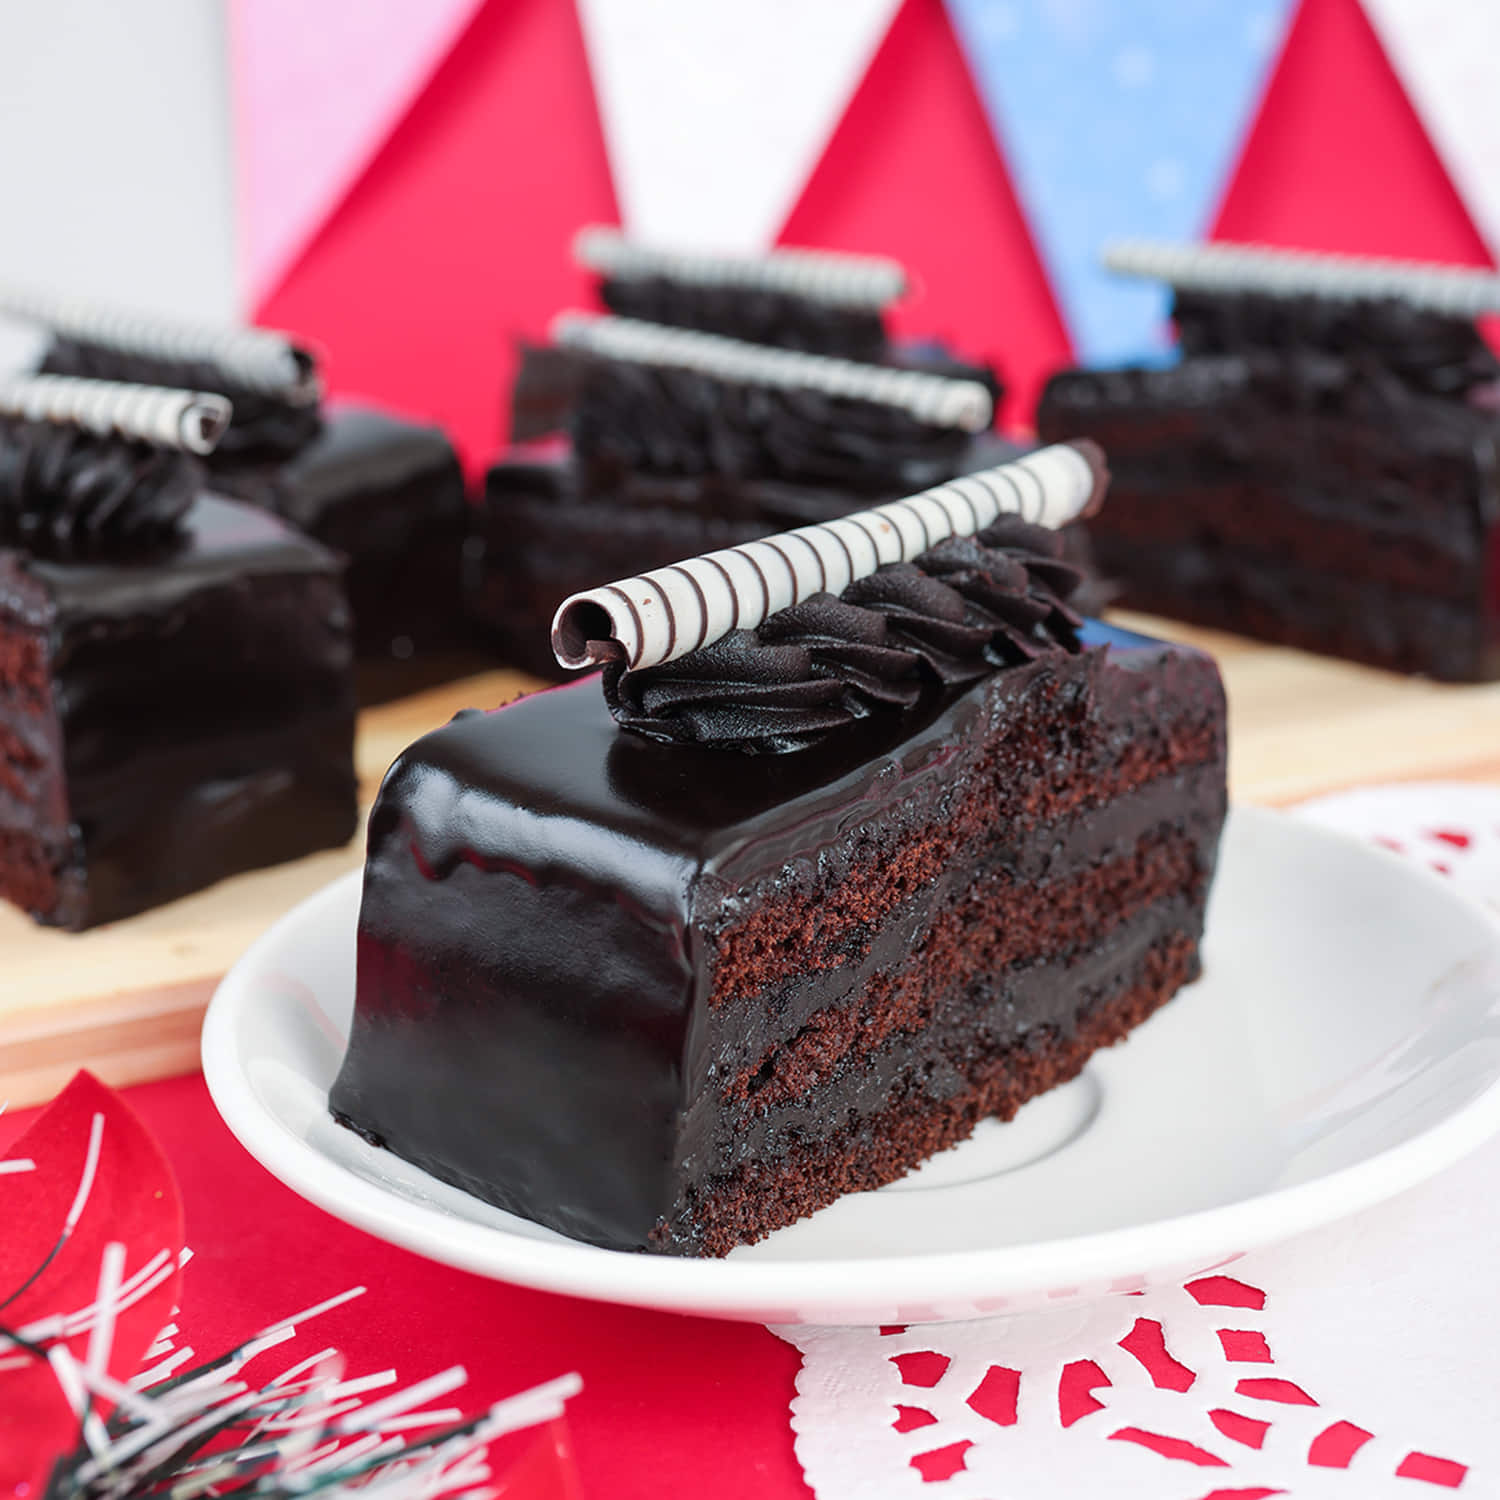 Chocolate Truffle Layer Cake Recipe - Kimberly Sklar